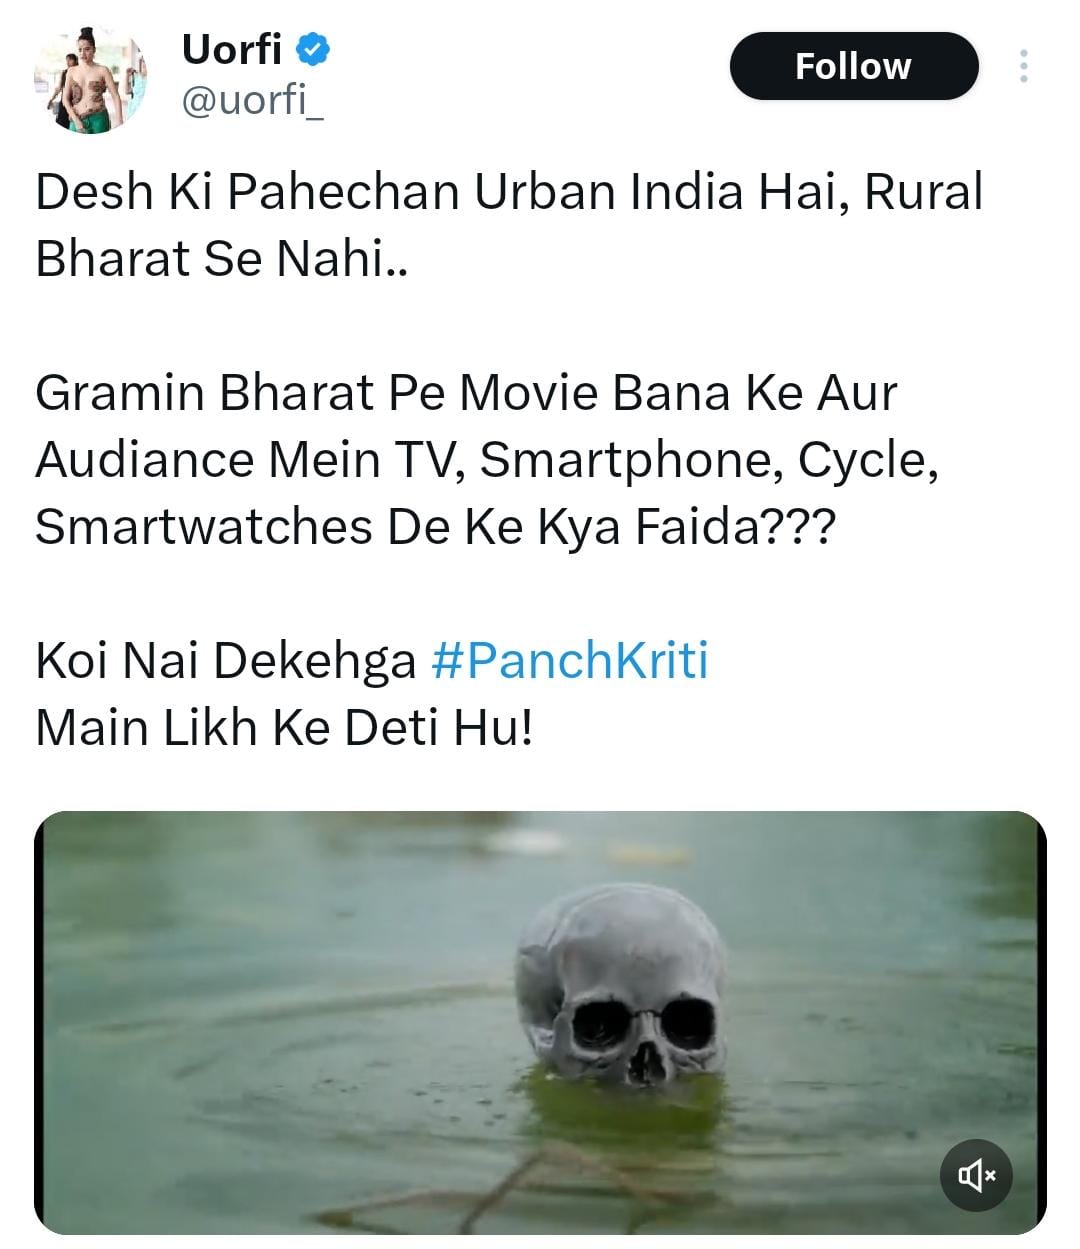 Uorfi Javed's Tweet Sparks Controversy with #UrfiAgainstRuralBharat Trend